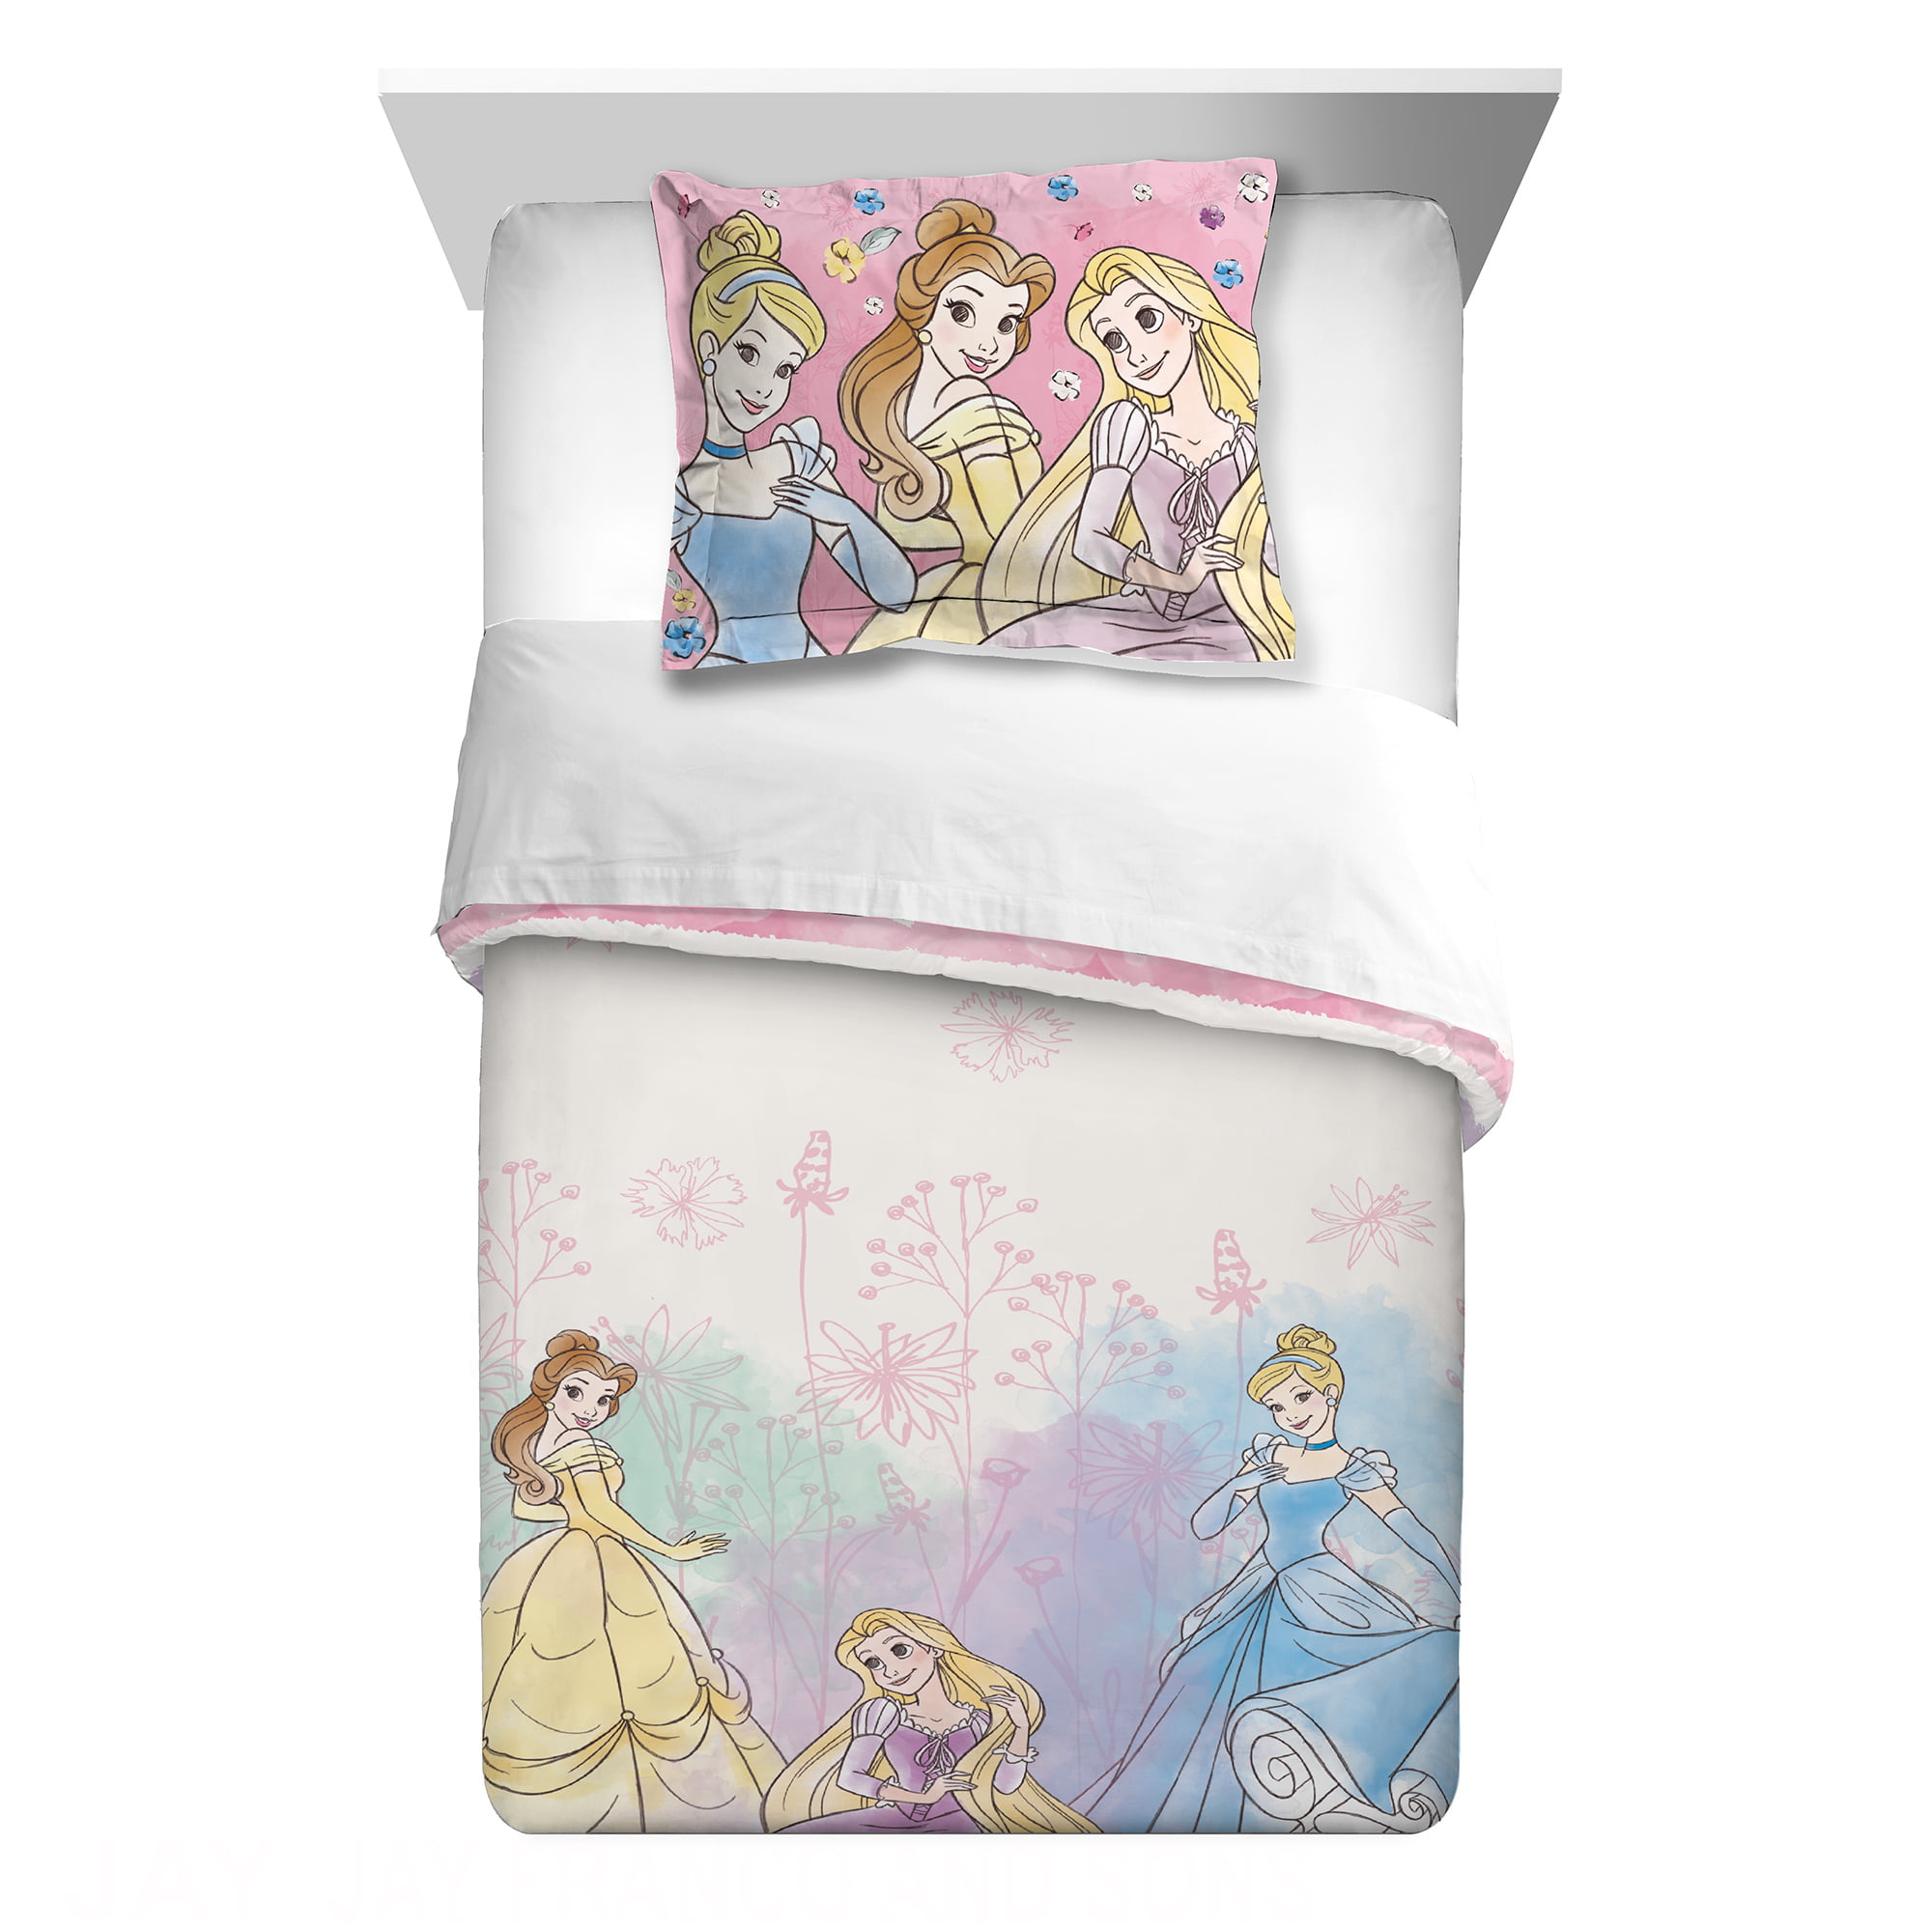 Disney Princesses 2Piece Comforter and Sham Set, Kids